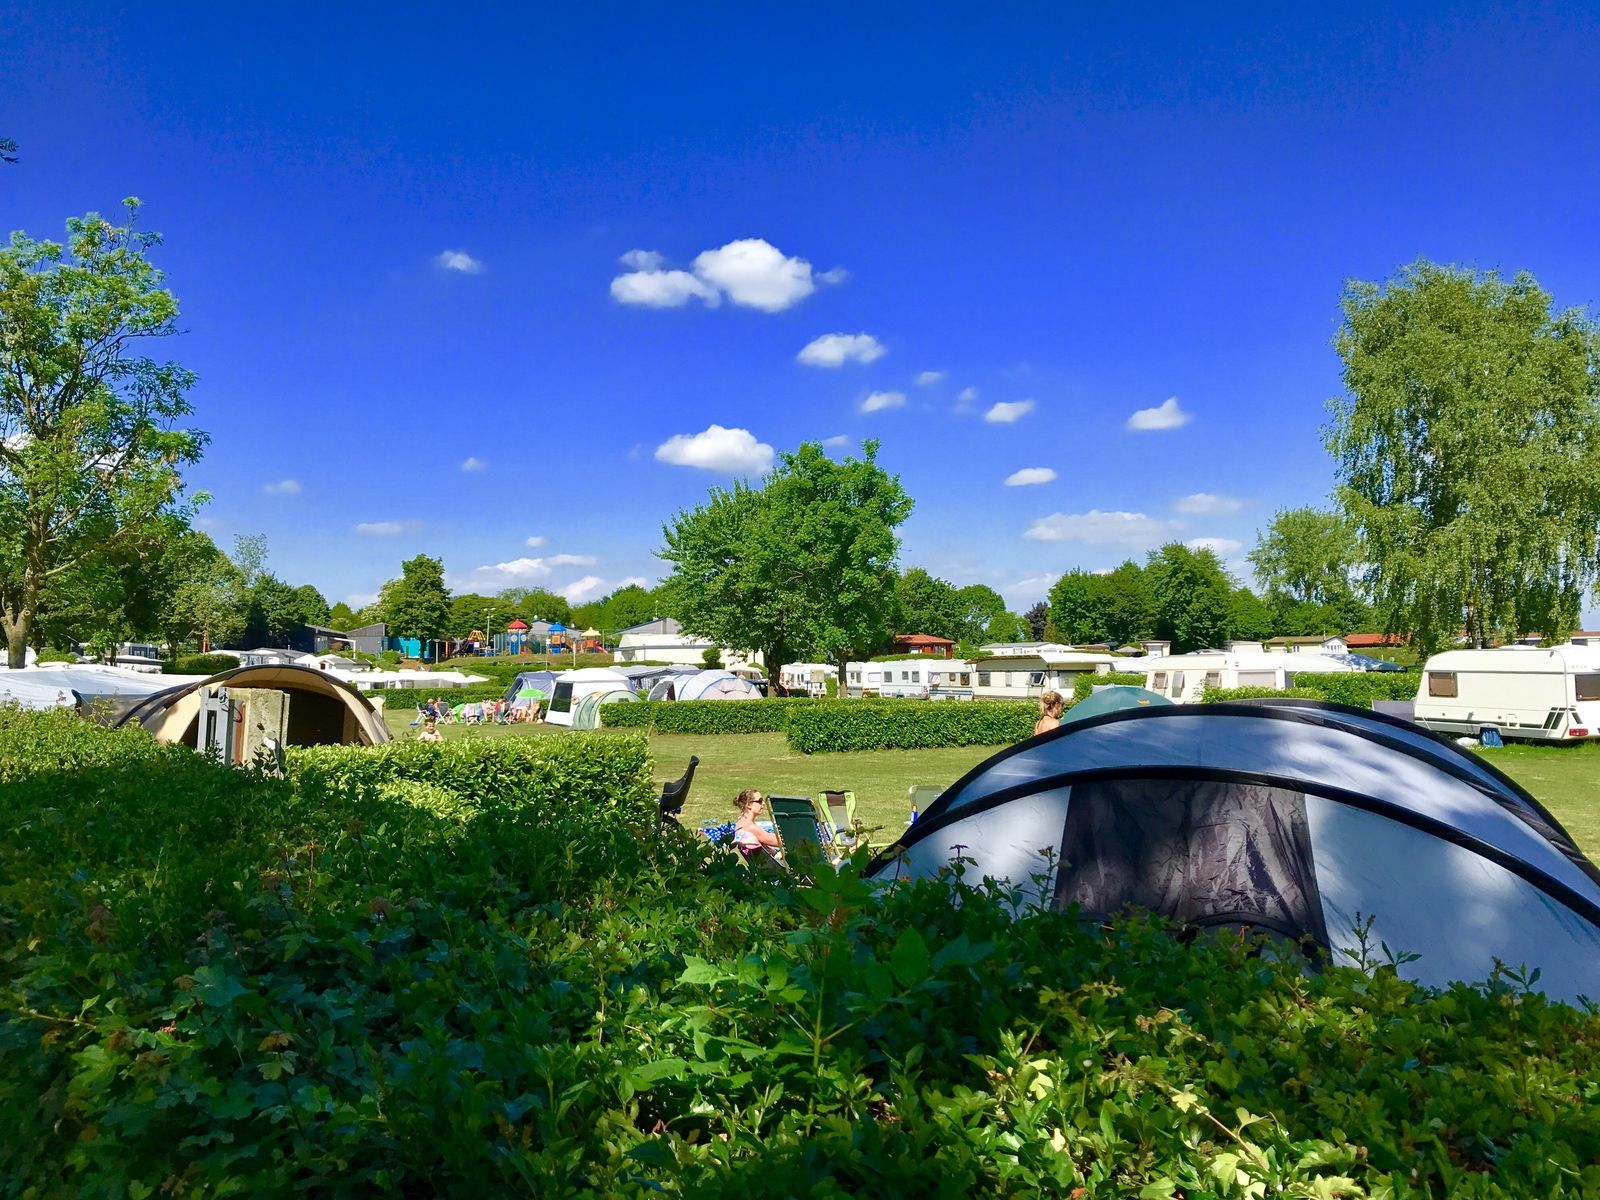 Camping-Stellplatz auf dem saisonalen Feld am äußeren Ring